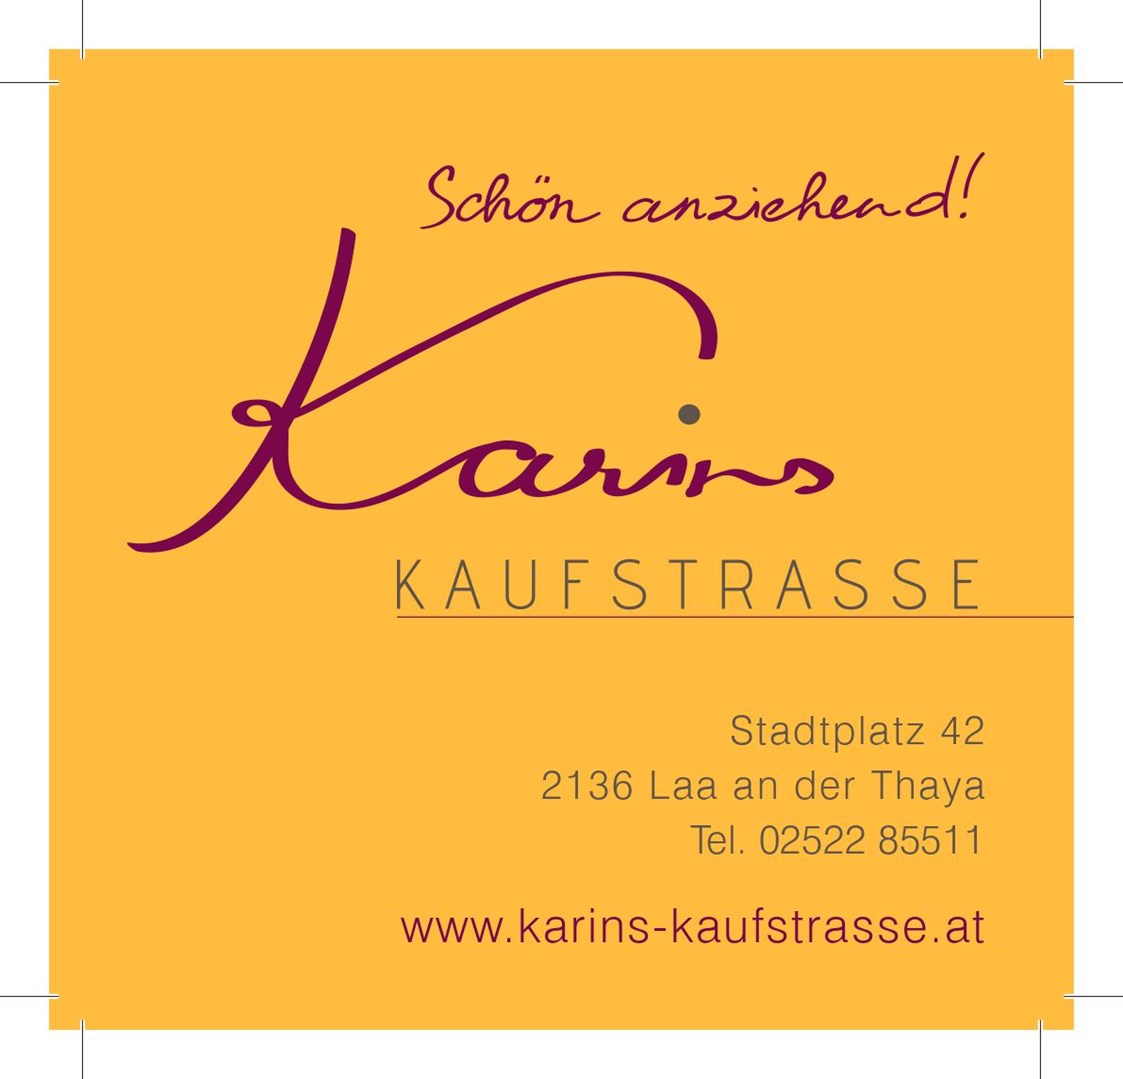 Unternehmen: Karins Kaufstrasse